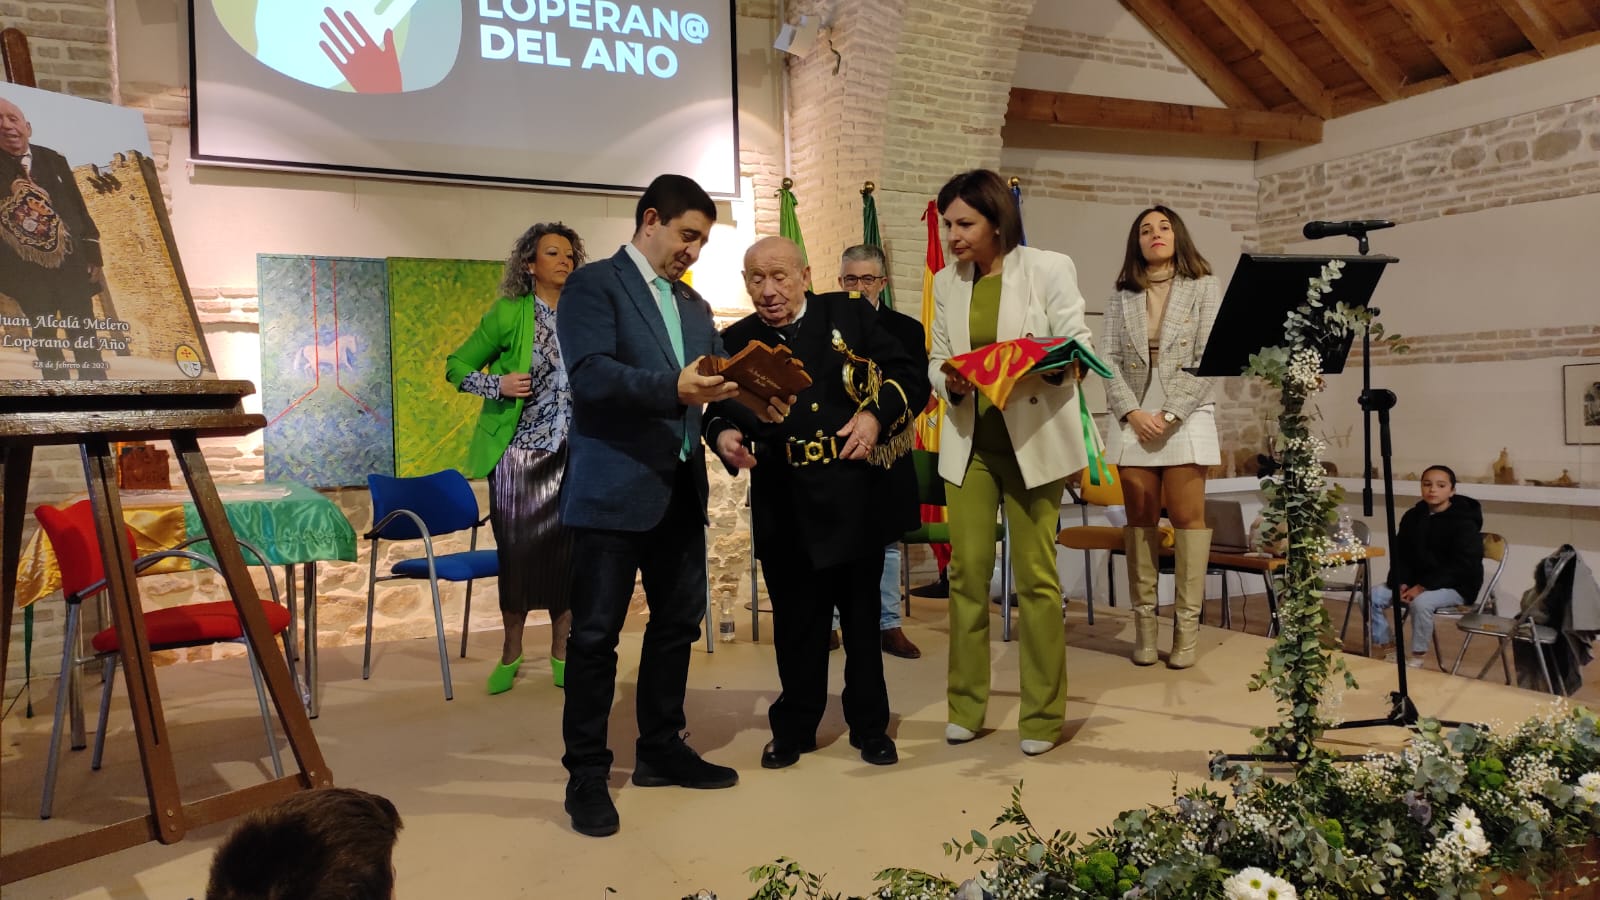 El presidente de la Diputación participa en un acto institucional organizado por el Ayuntamiento de Lopera para conmemorar el 28-F